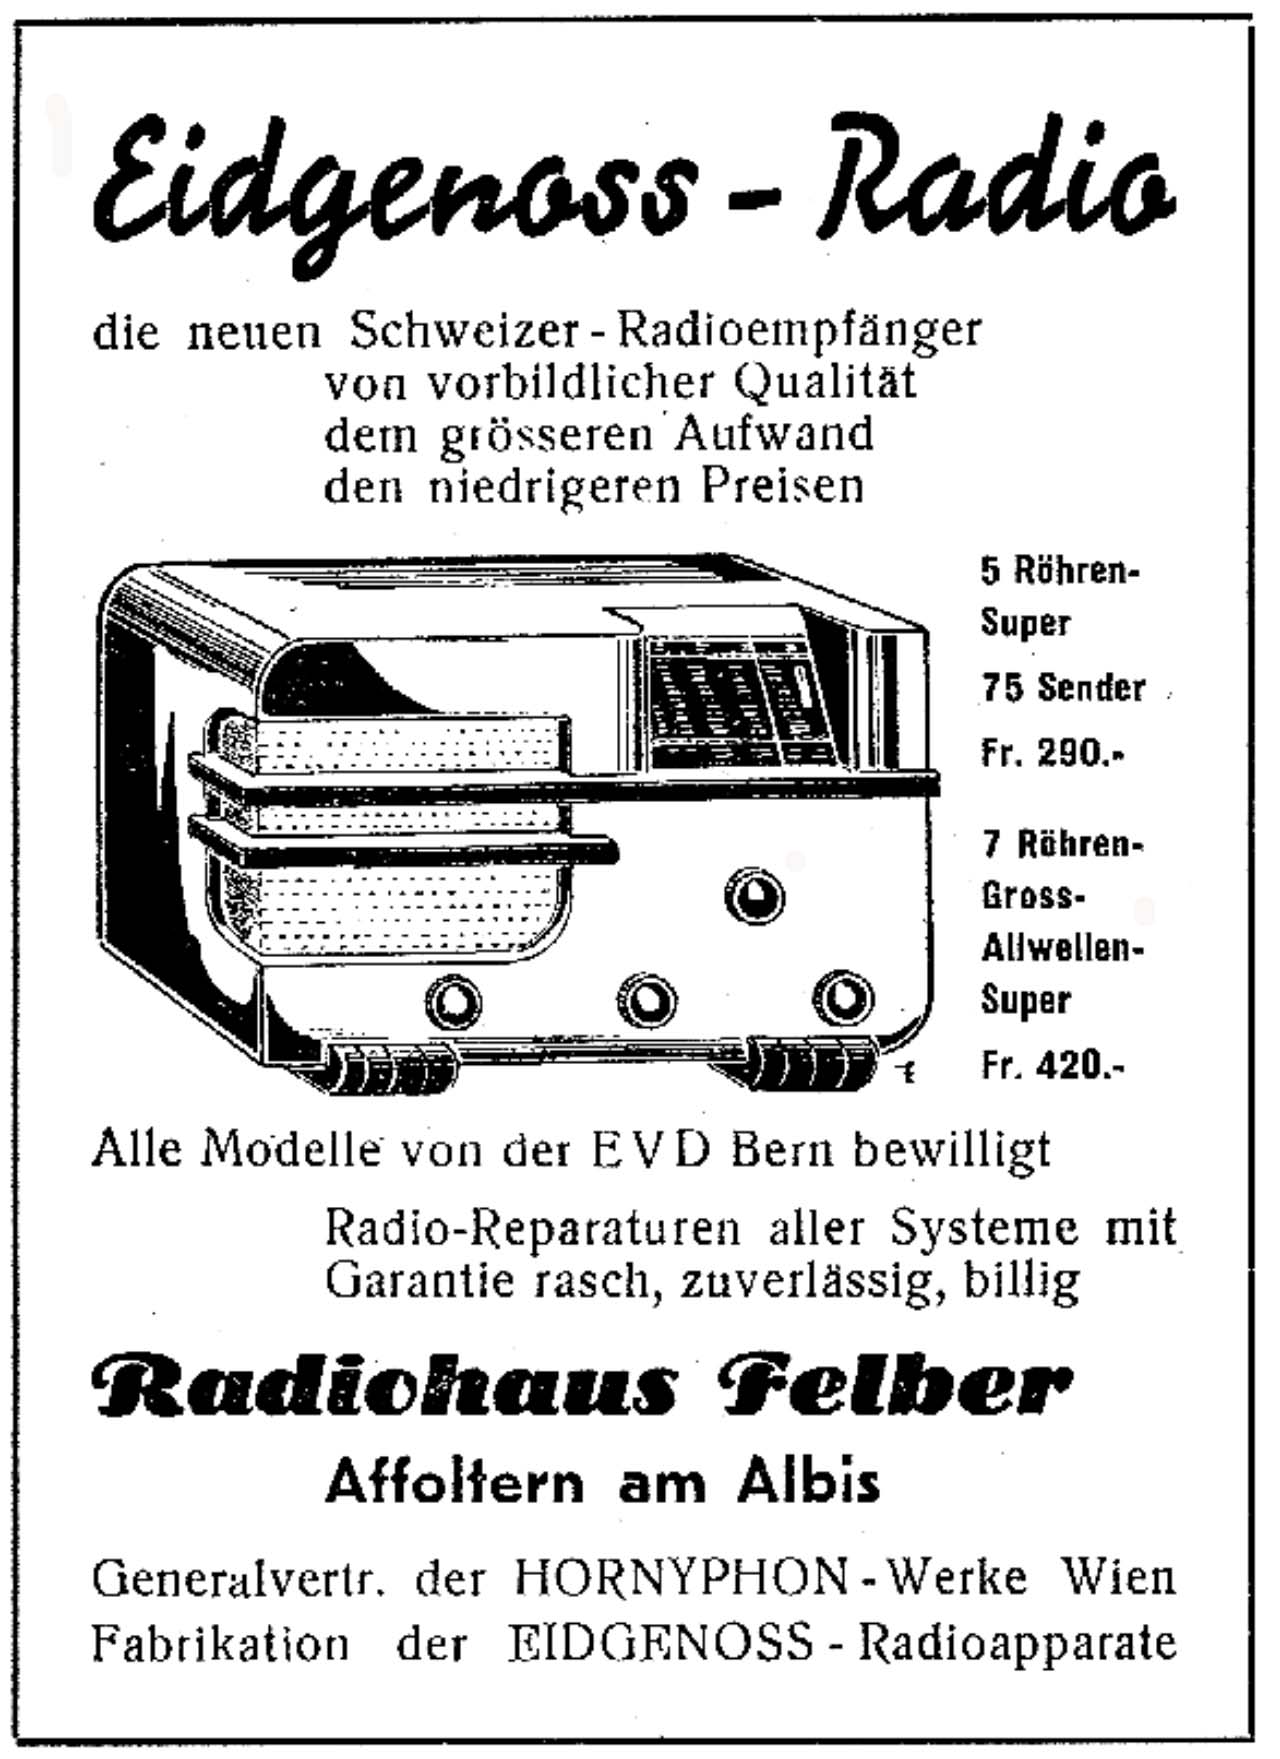 Radiowerbung - "der Eidgenoss" von 30er Jahren